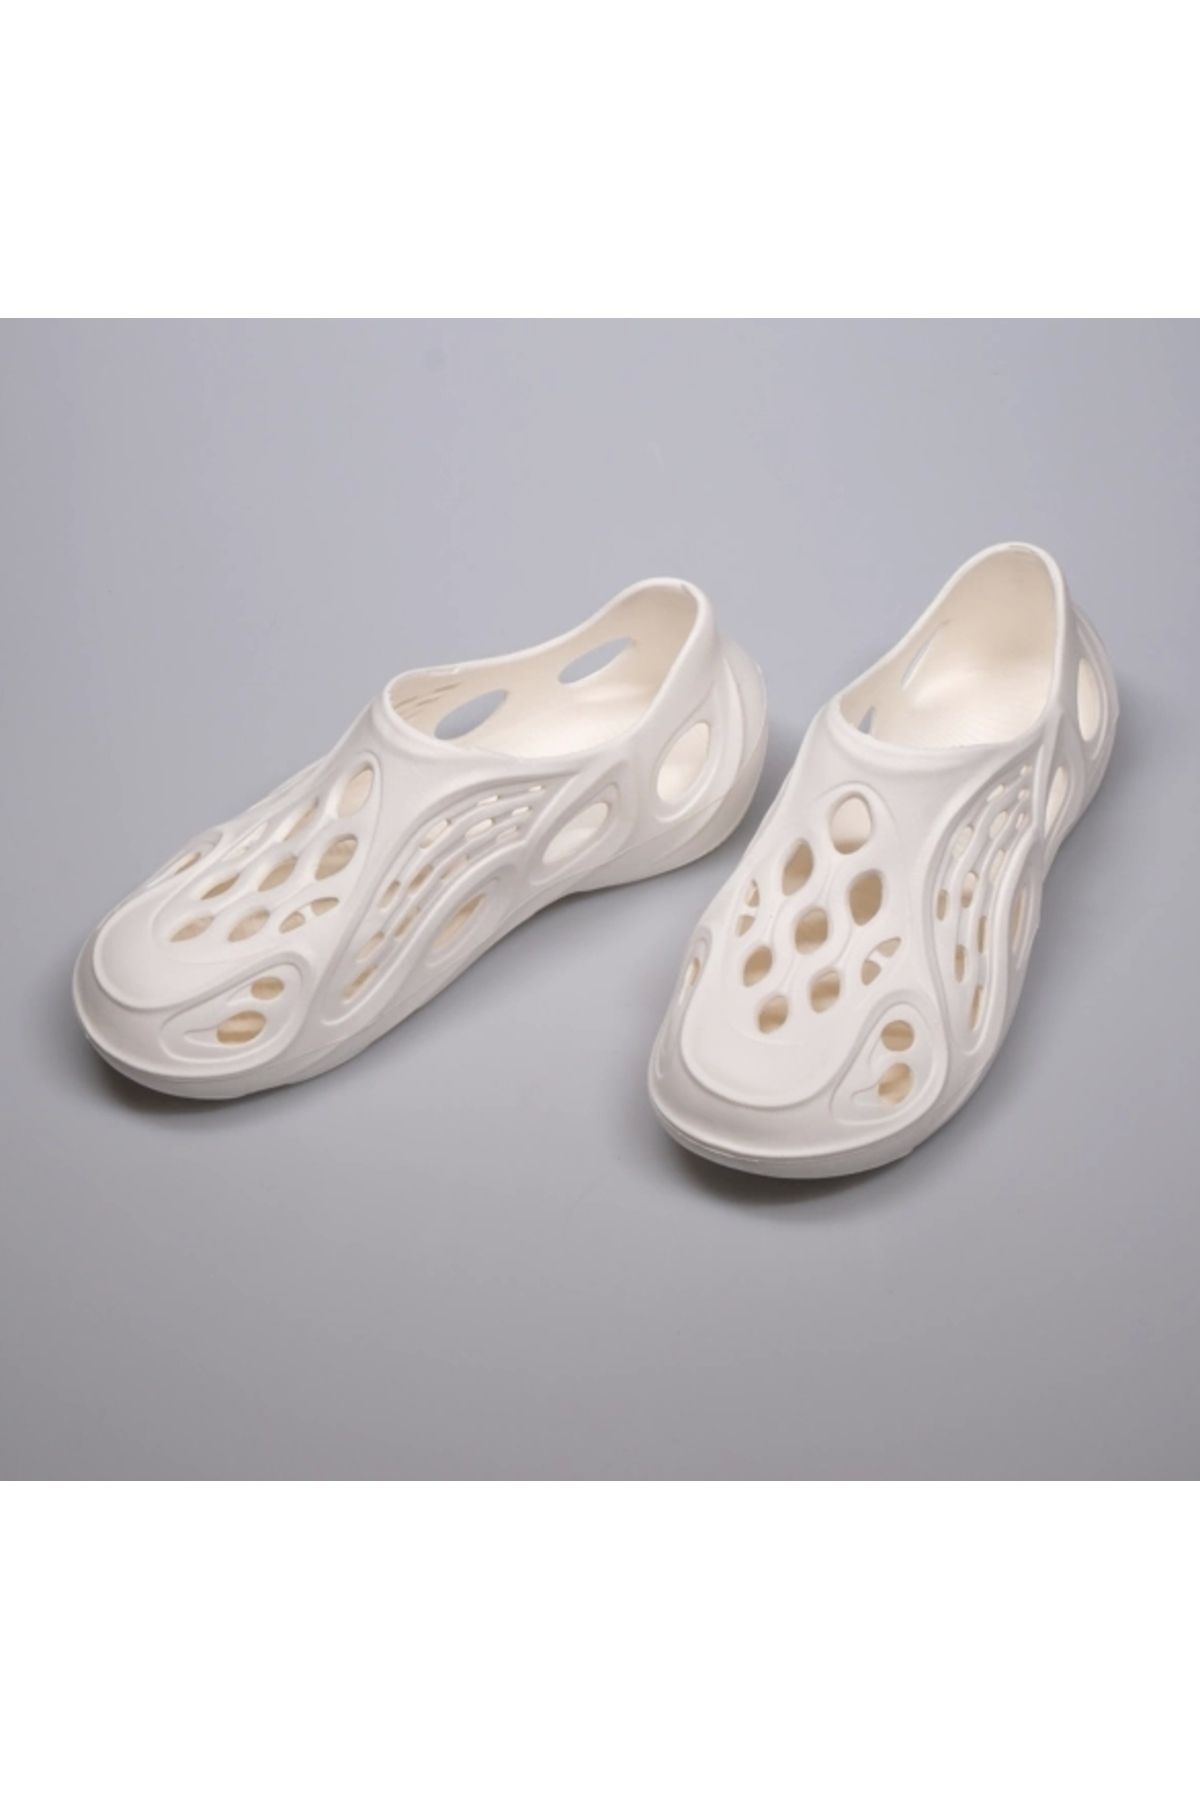 shoecide Beyaz Unisex Eva Özel Tasarım Confort Sandalet